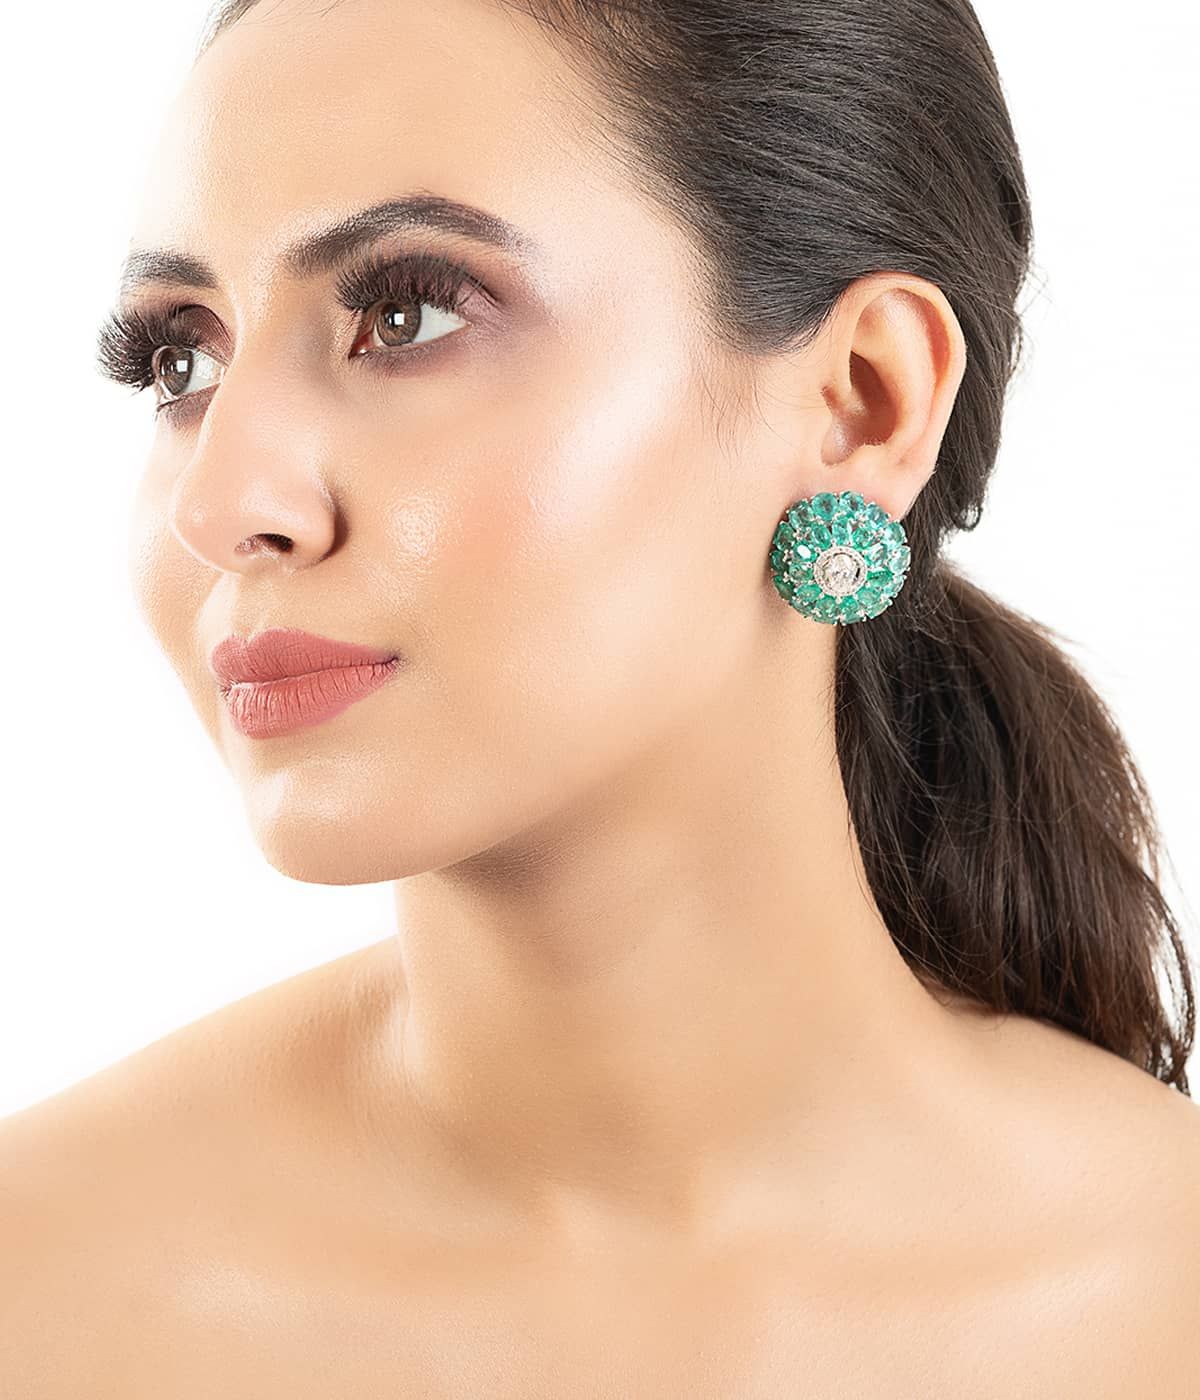 Buy Diamond Earrings for Women Online in India | Amaris Jewels